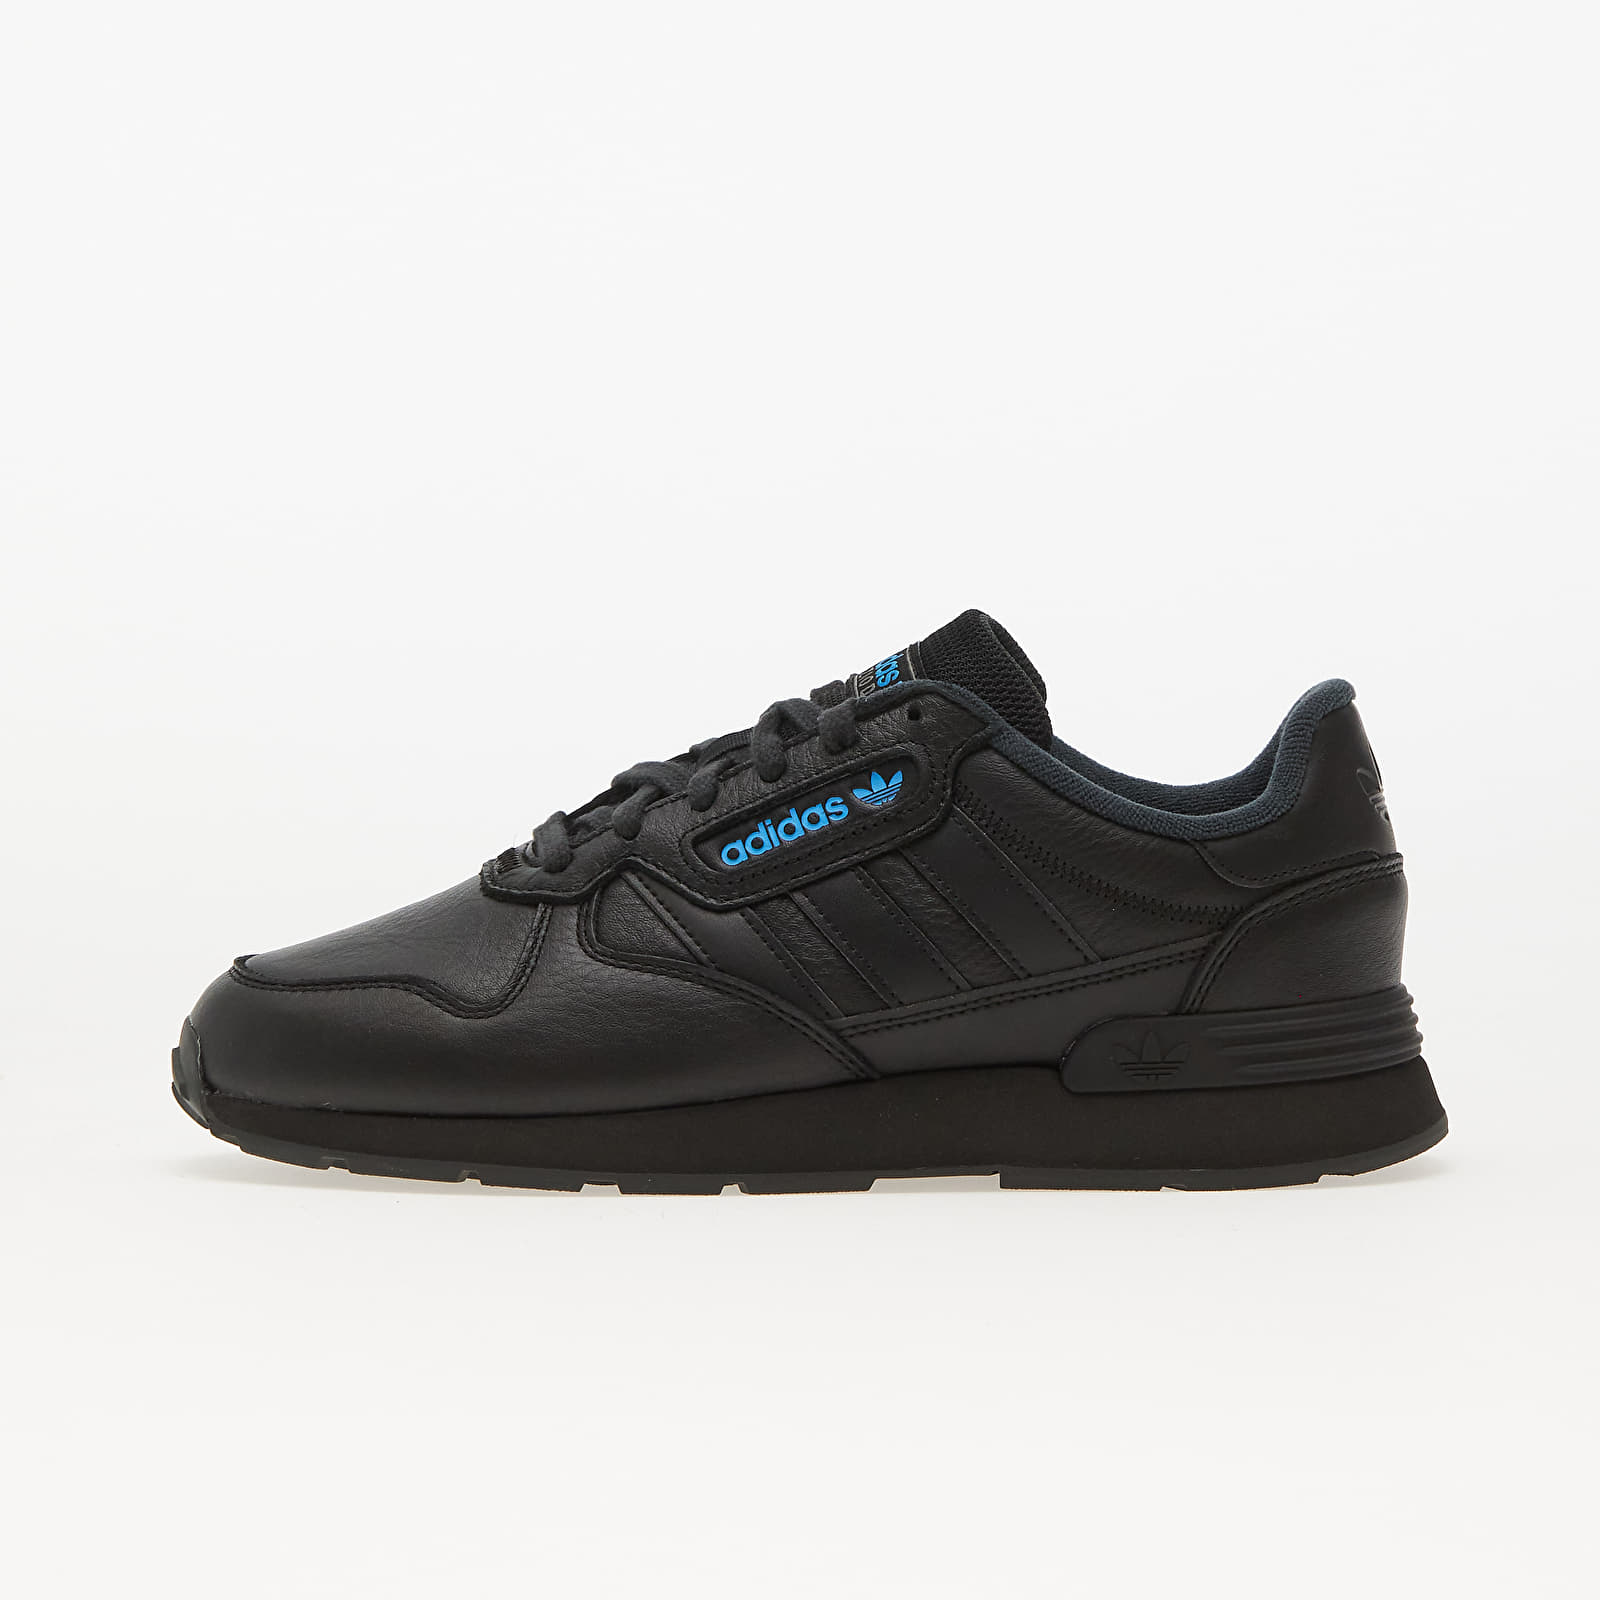 Chaussures et baskets homme adidas Treziod 2 Core Black/ Carbon/ Grey Four